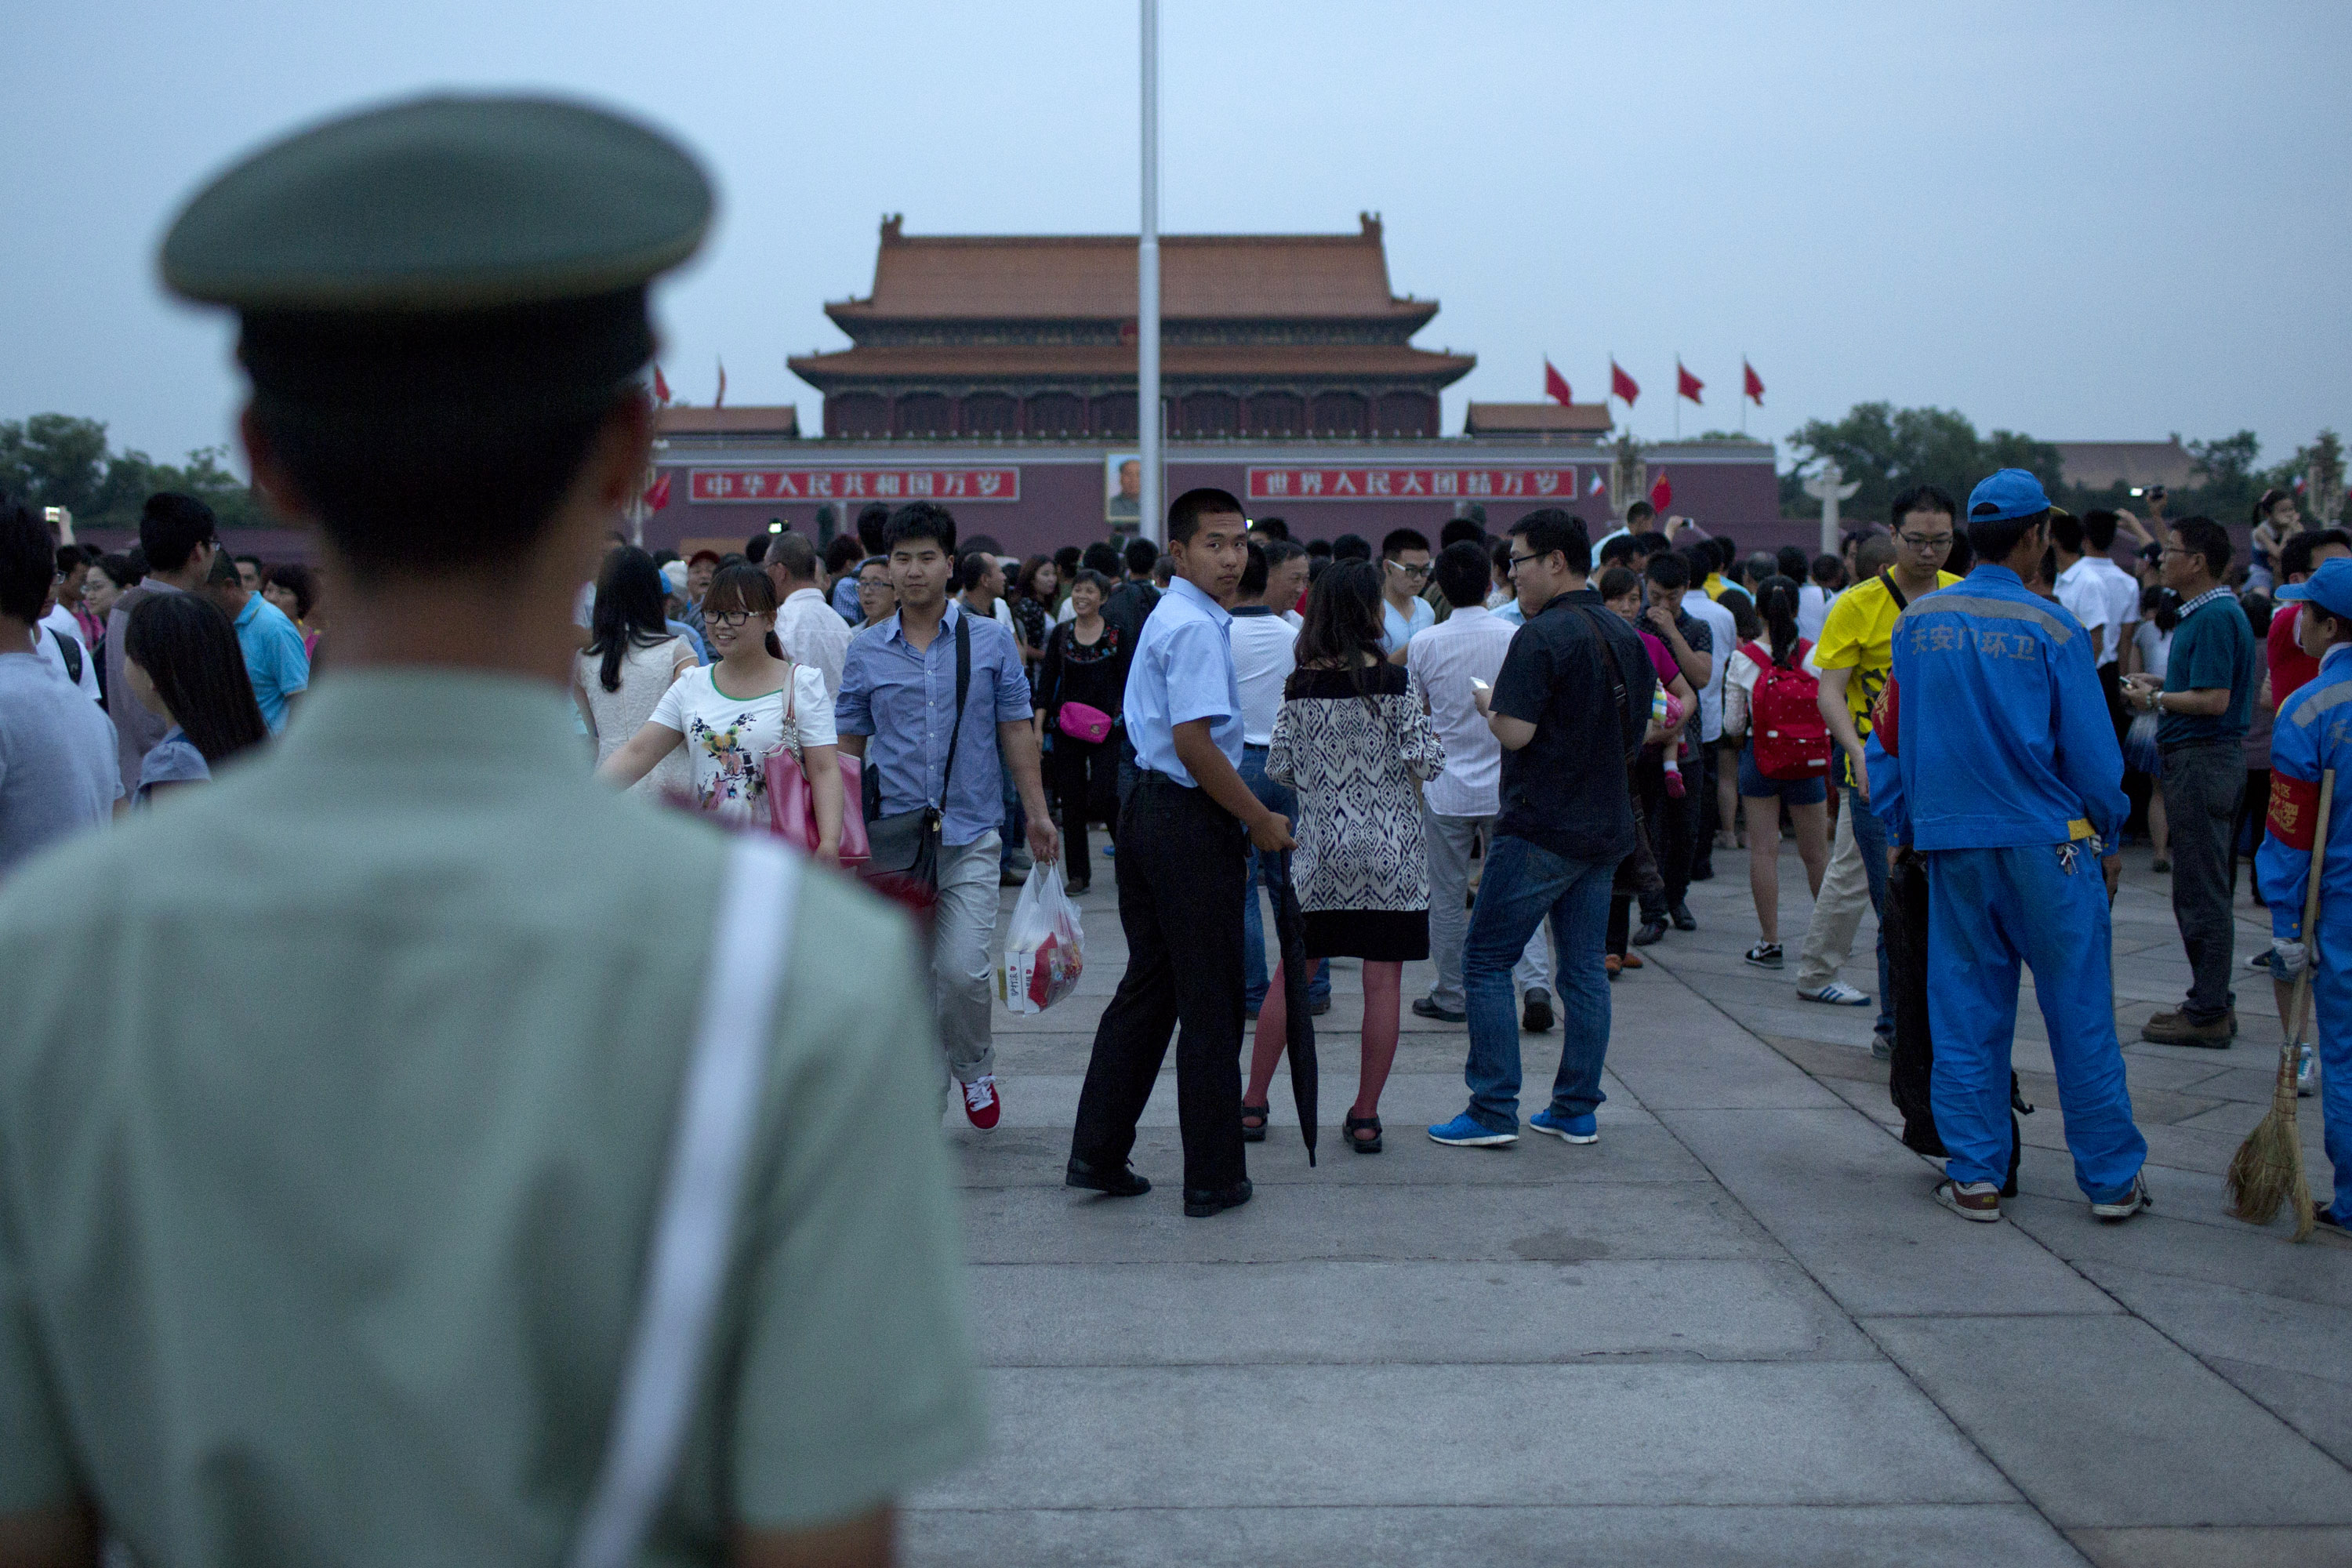 0604 Tiananmen Square 2